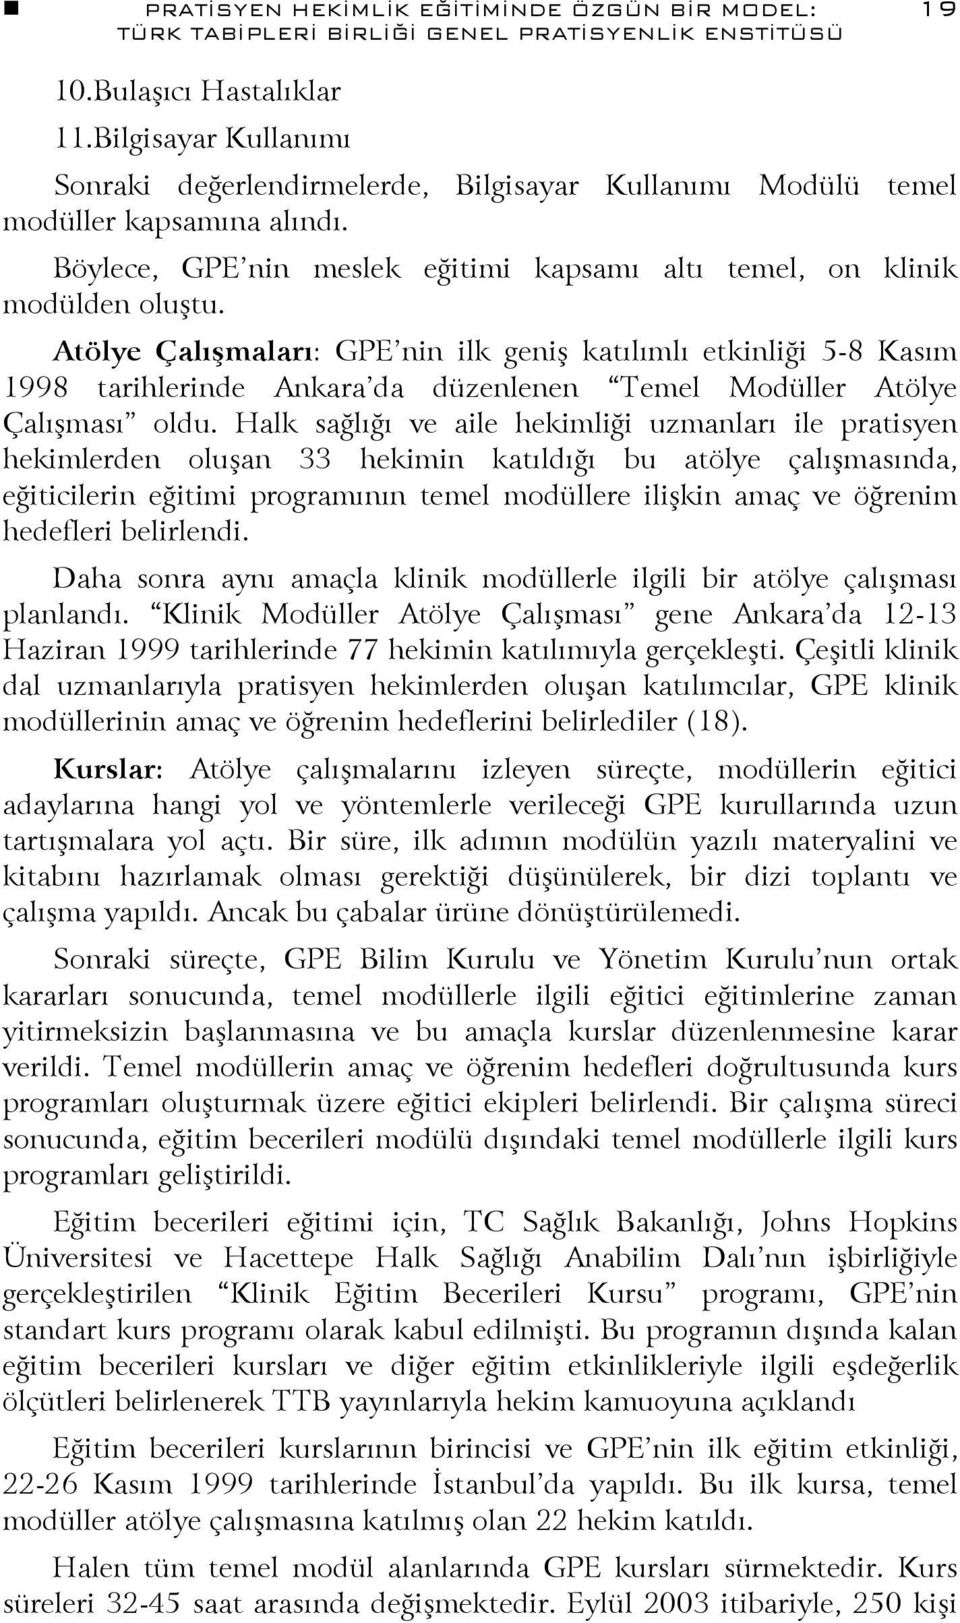 Atölye Çalışmaları: GPE nin ilk geniş katılımlı etkinliği 5-8 Kasım 1998 tarihlerinde Ankara da düzenlenen Temel Modüller Atölye Çalışması oldu.